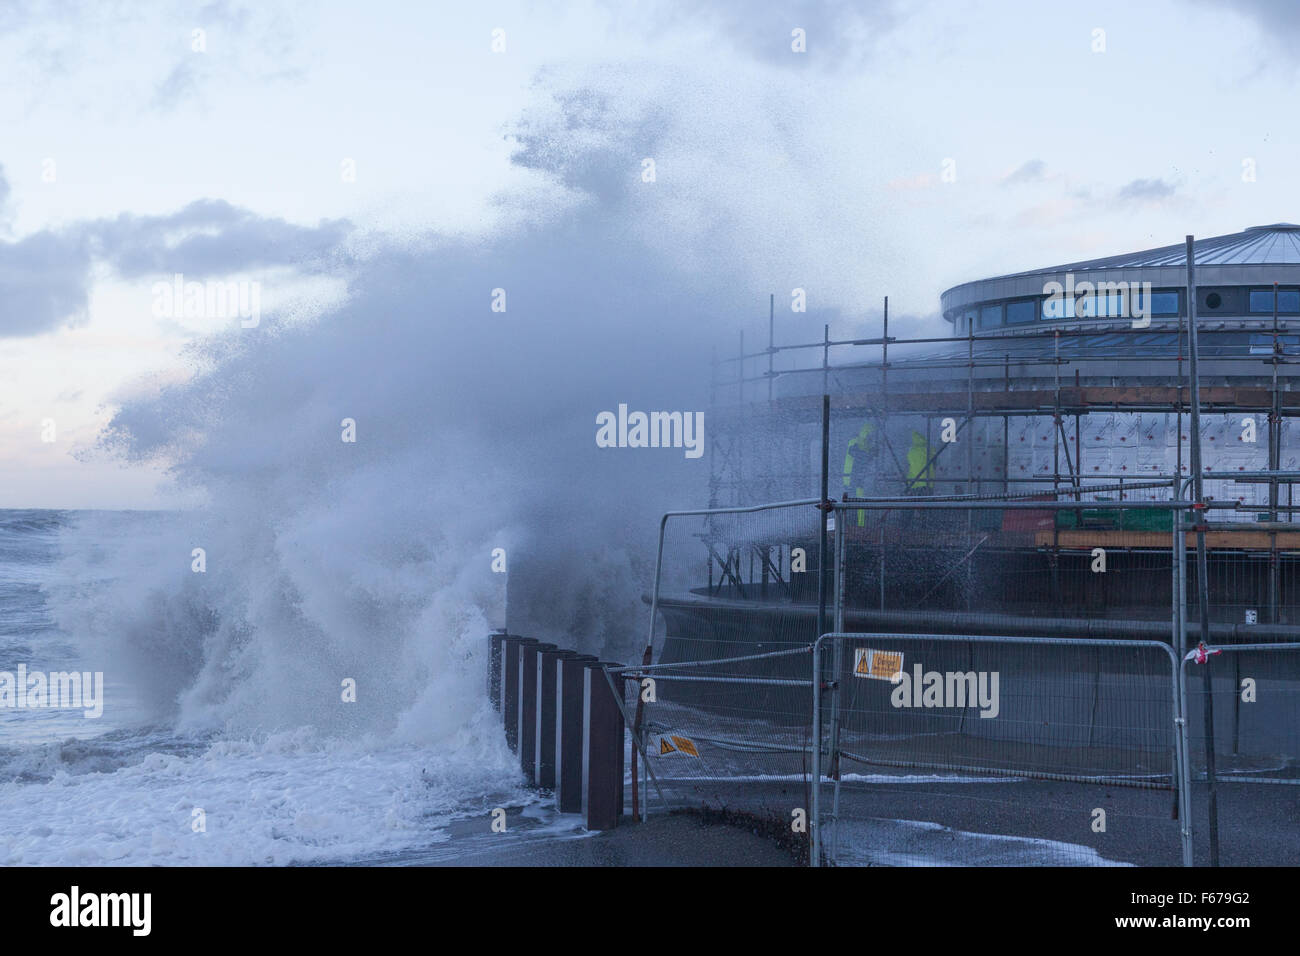 Aberystwyth, Pays de Galles, Royaume-Uni. 13 novembre 2015. Abigail lashes out tempête à Aberystwyth ce matin avec furious vagues tandis que deux constructeurs essayez de travailler sur l'échafaudage du nouveau kiosque sur la promenade. Crédit : Ian Jones/Alamy Live News Banque D'Images